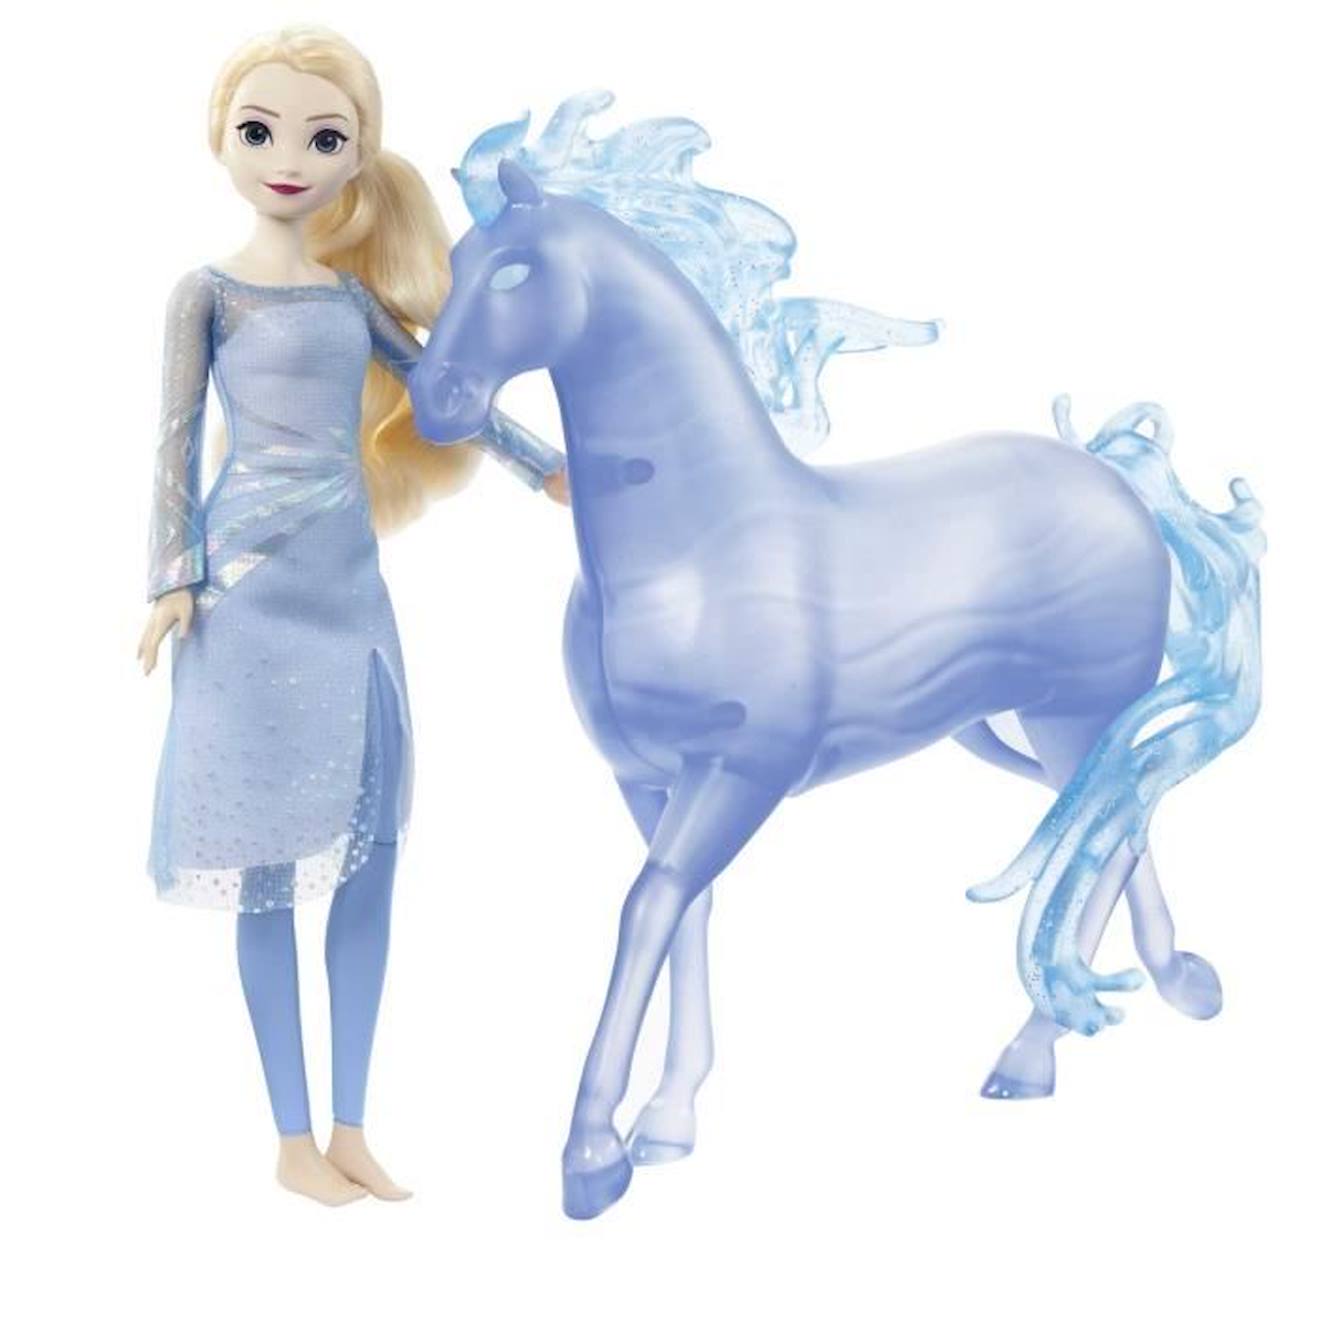 Poupée Elsa Et Nokk De La Reine Des Neiges Disney Princess - Figurines Articulées Pour Enfant De 3 A